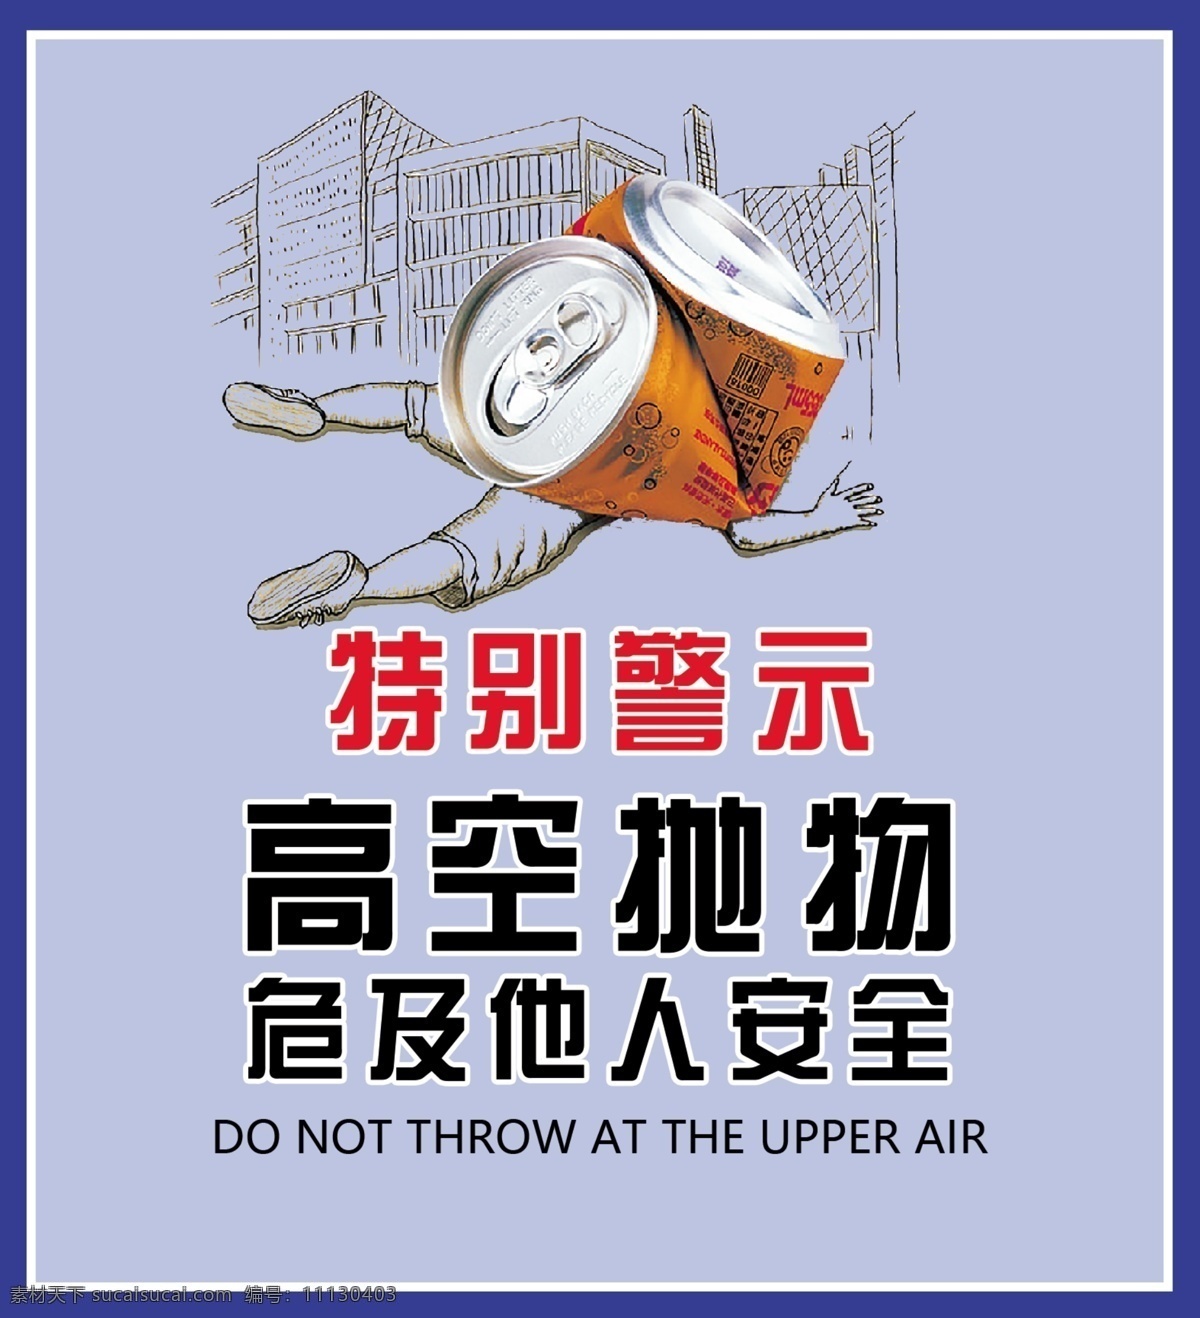 高空抛物图片 提示 警告 警示 特别 高空抛物 危险 安全 他人 文明 蓝色 展板 海报 室外广告设计